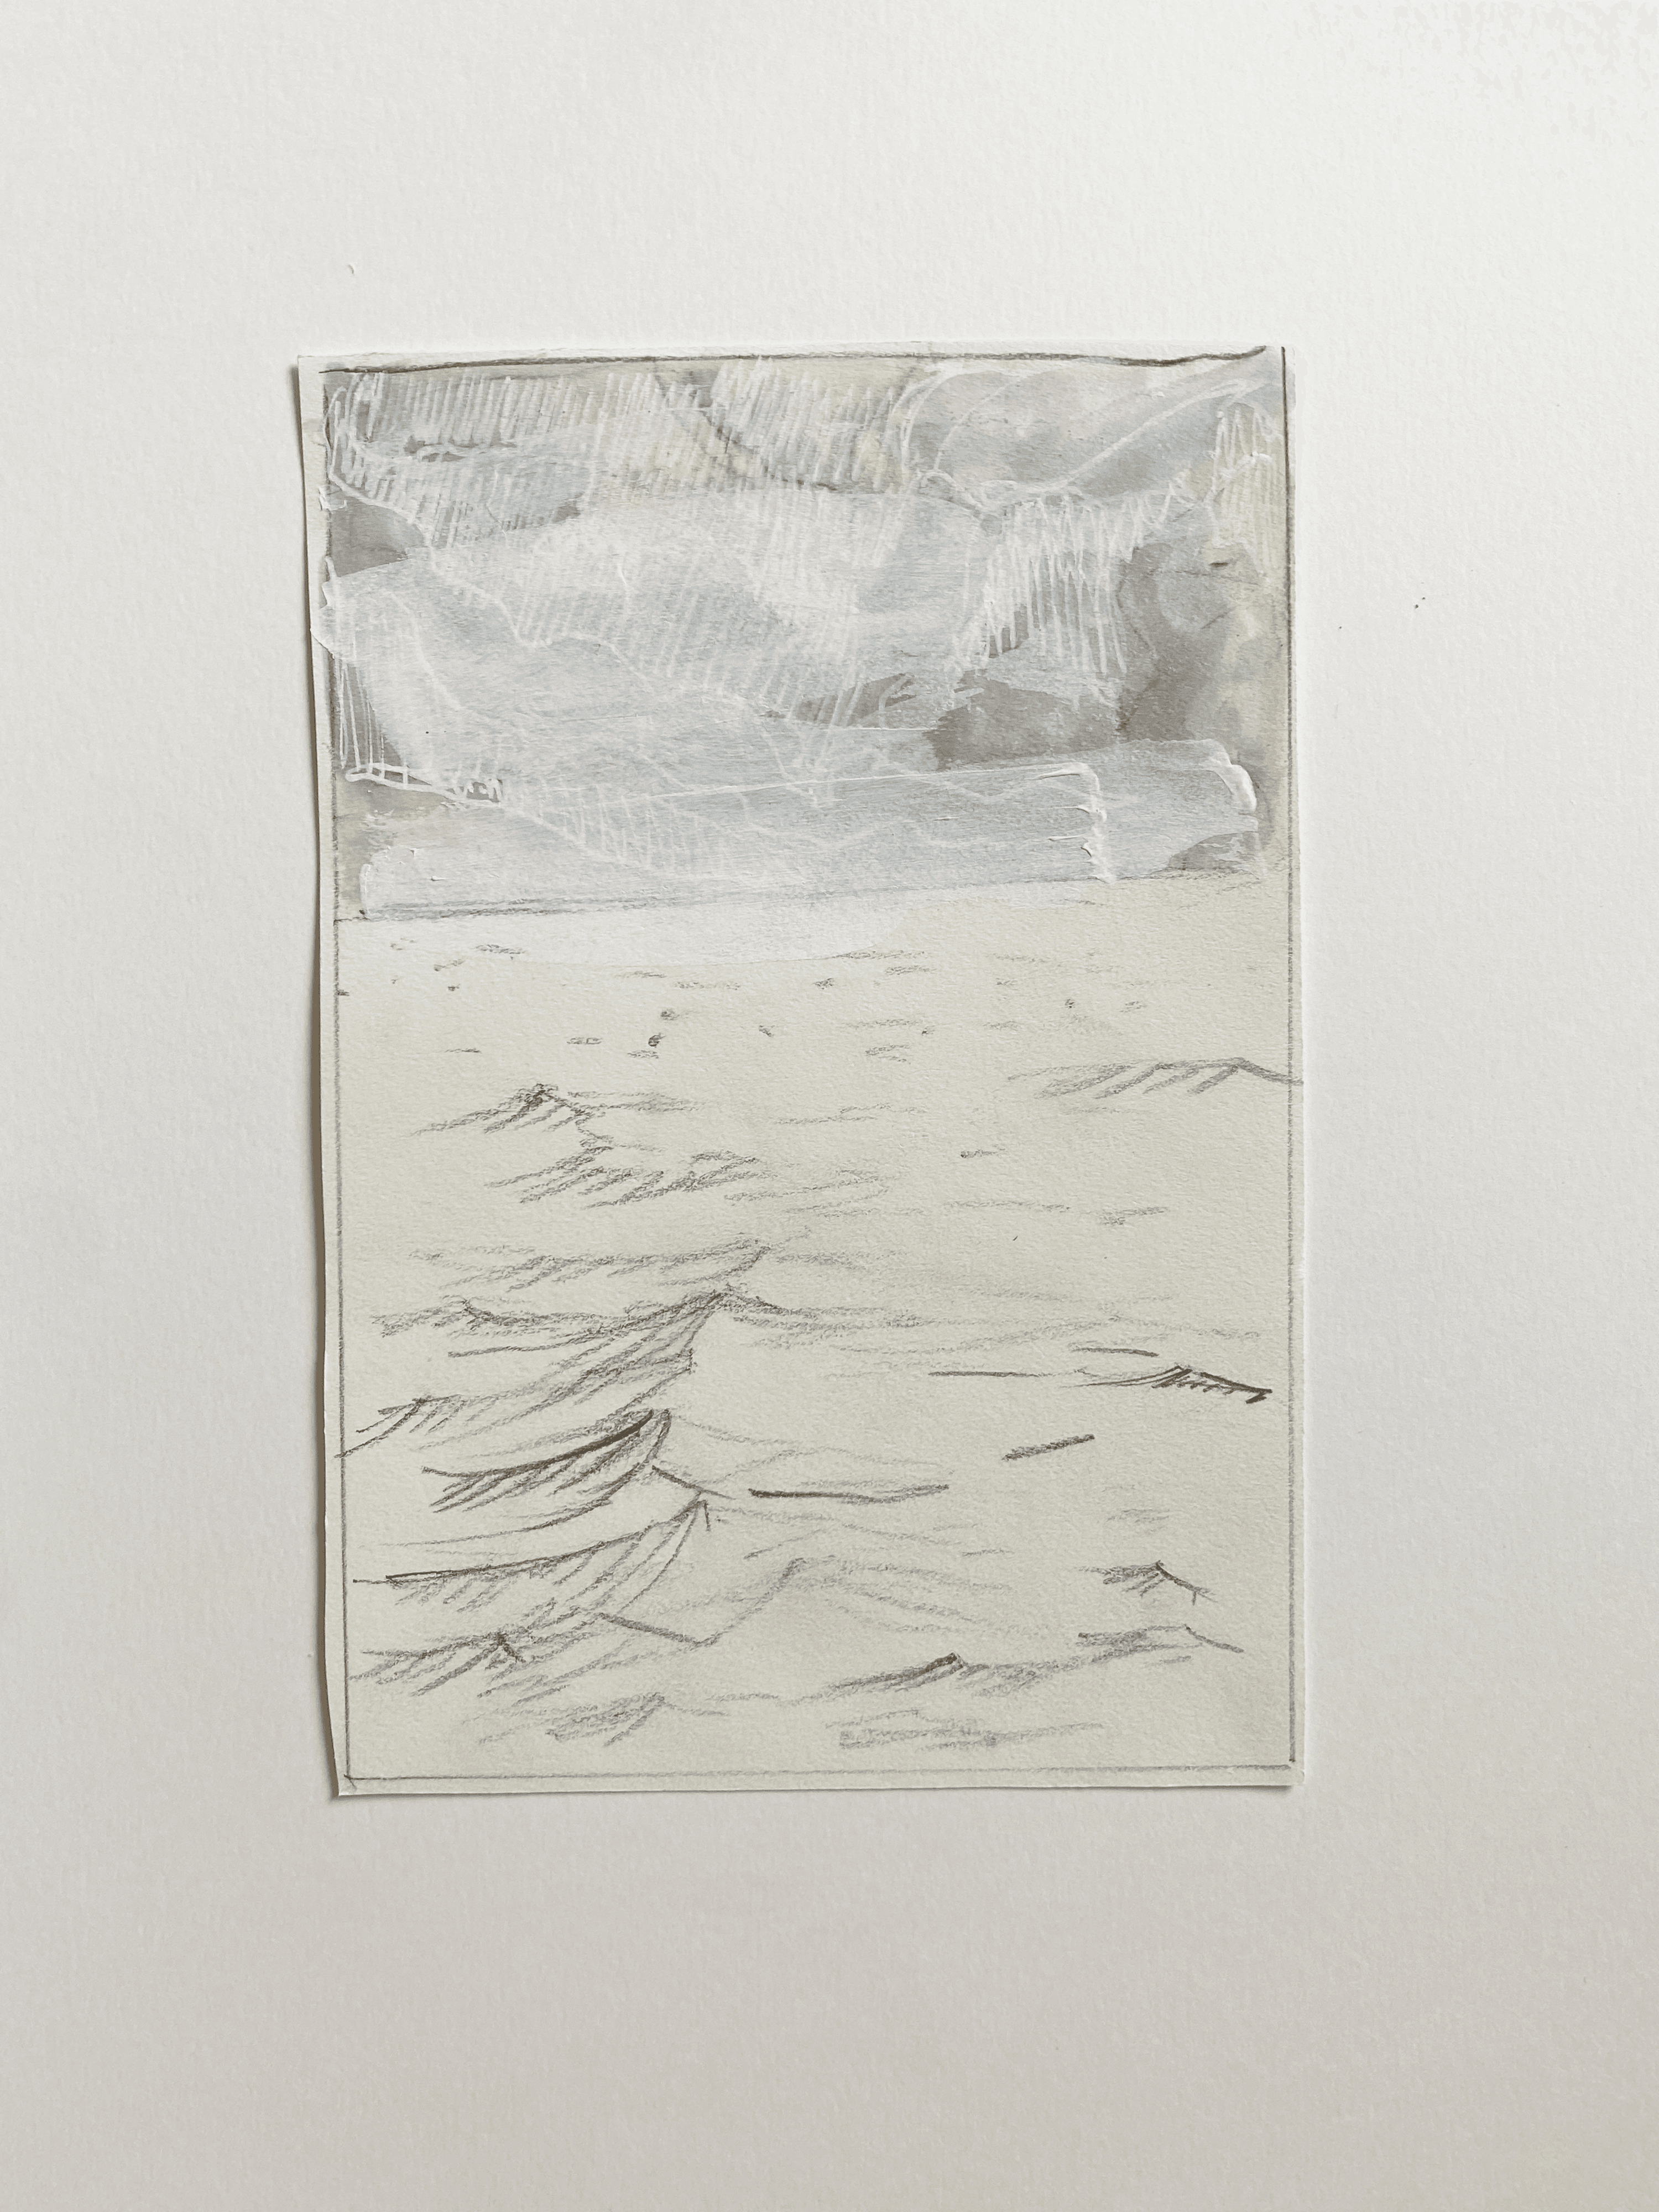 Water Sketch No. 15